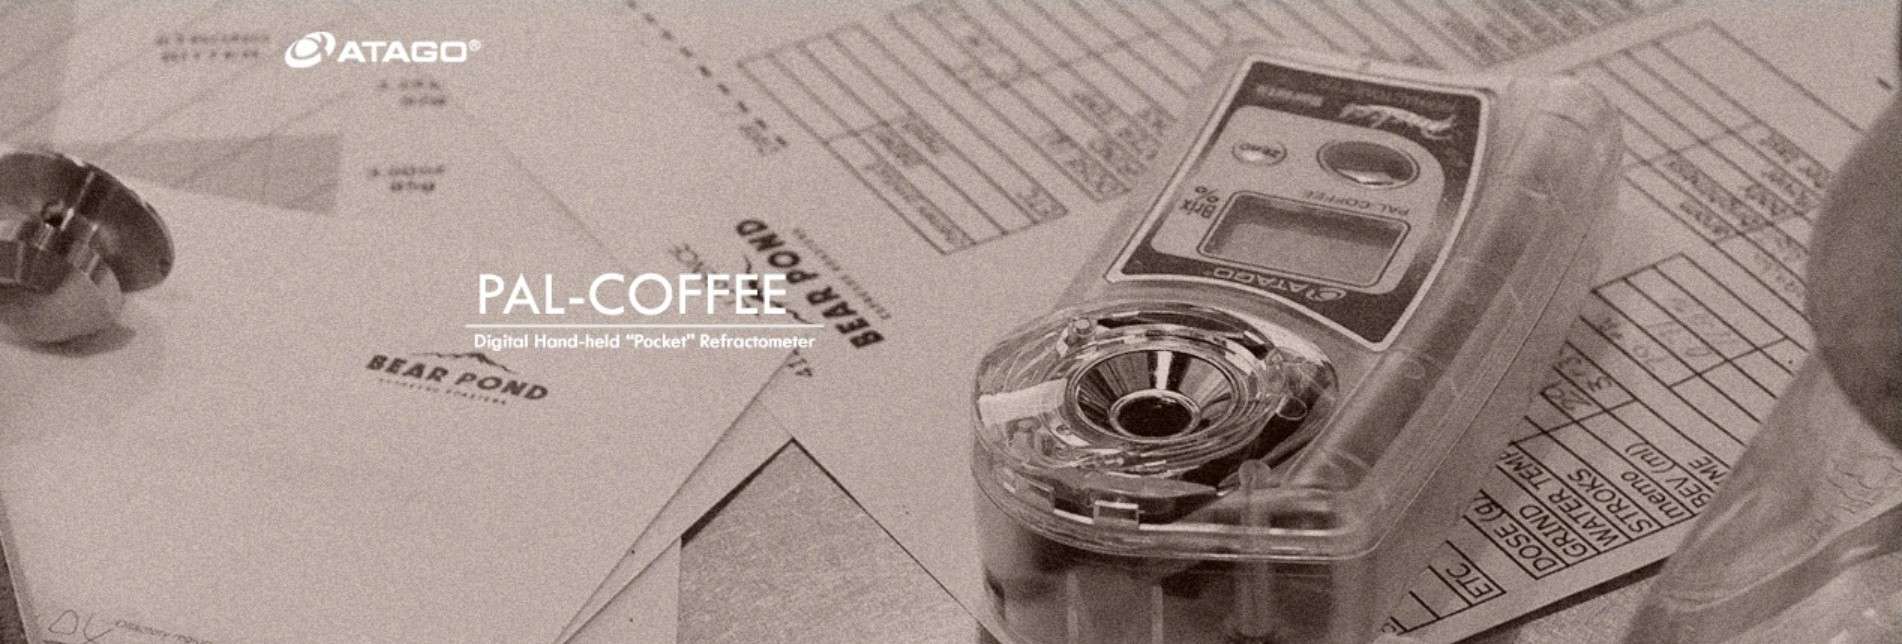 kahve refraktometresi atago pal coffee (brix ve tds ölçümü)